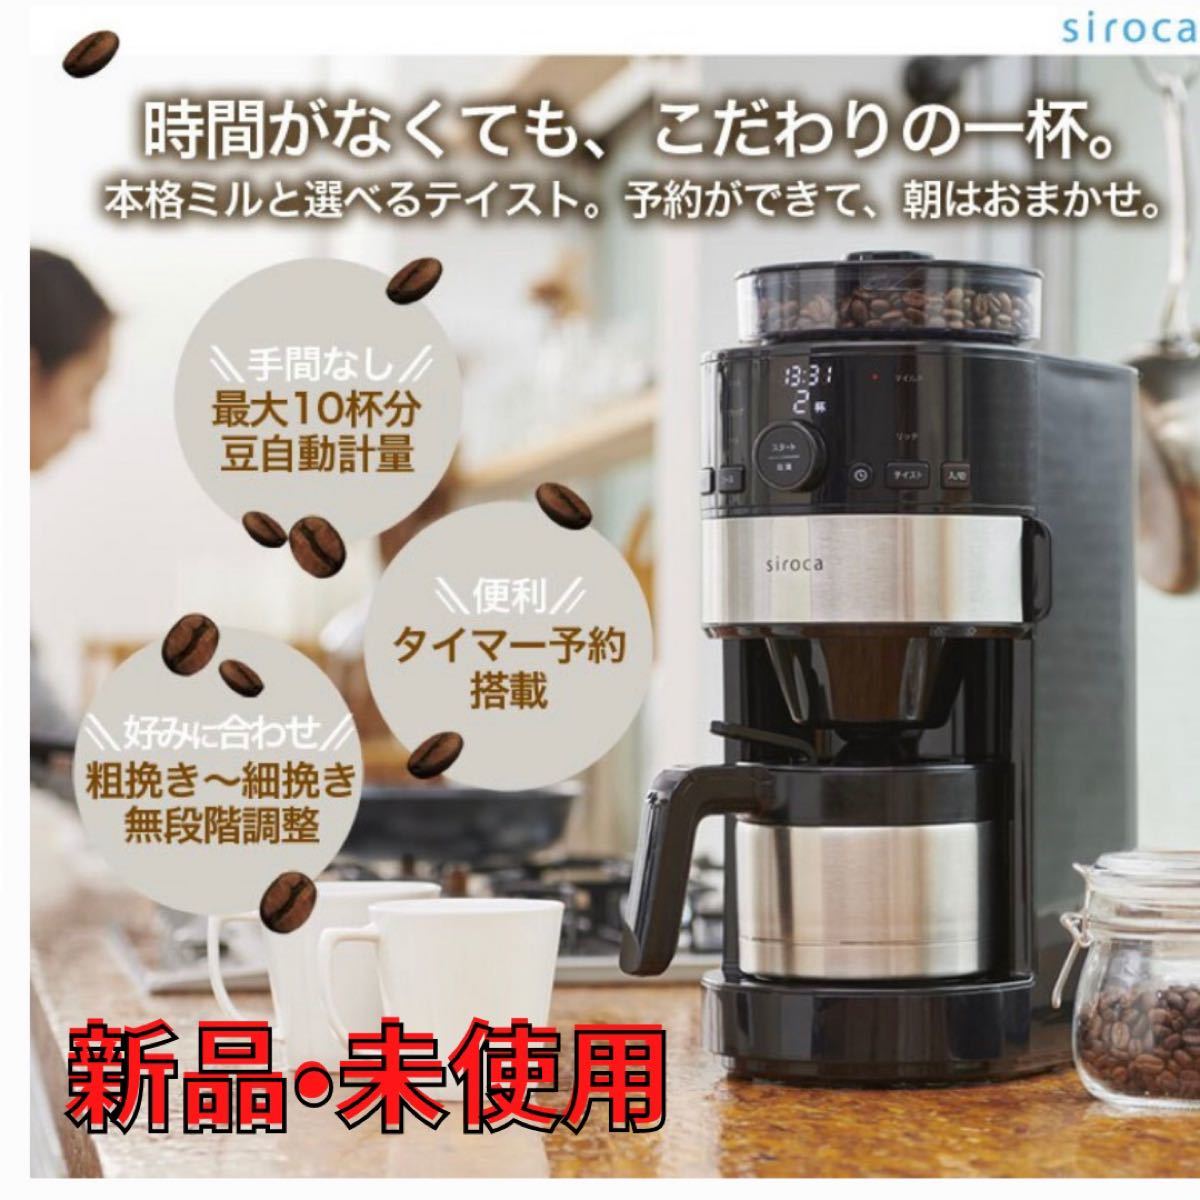 シロカ siroca コーン式全自動コーヒーメーカー SC-C122